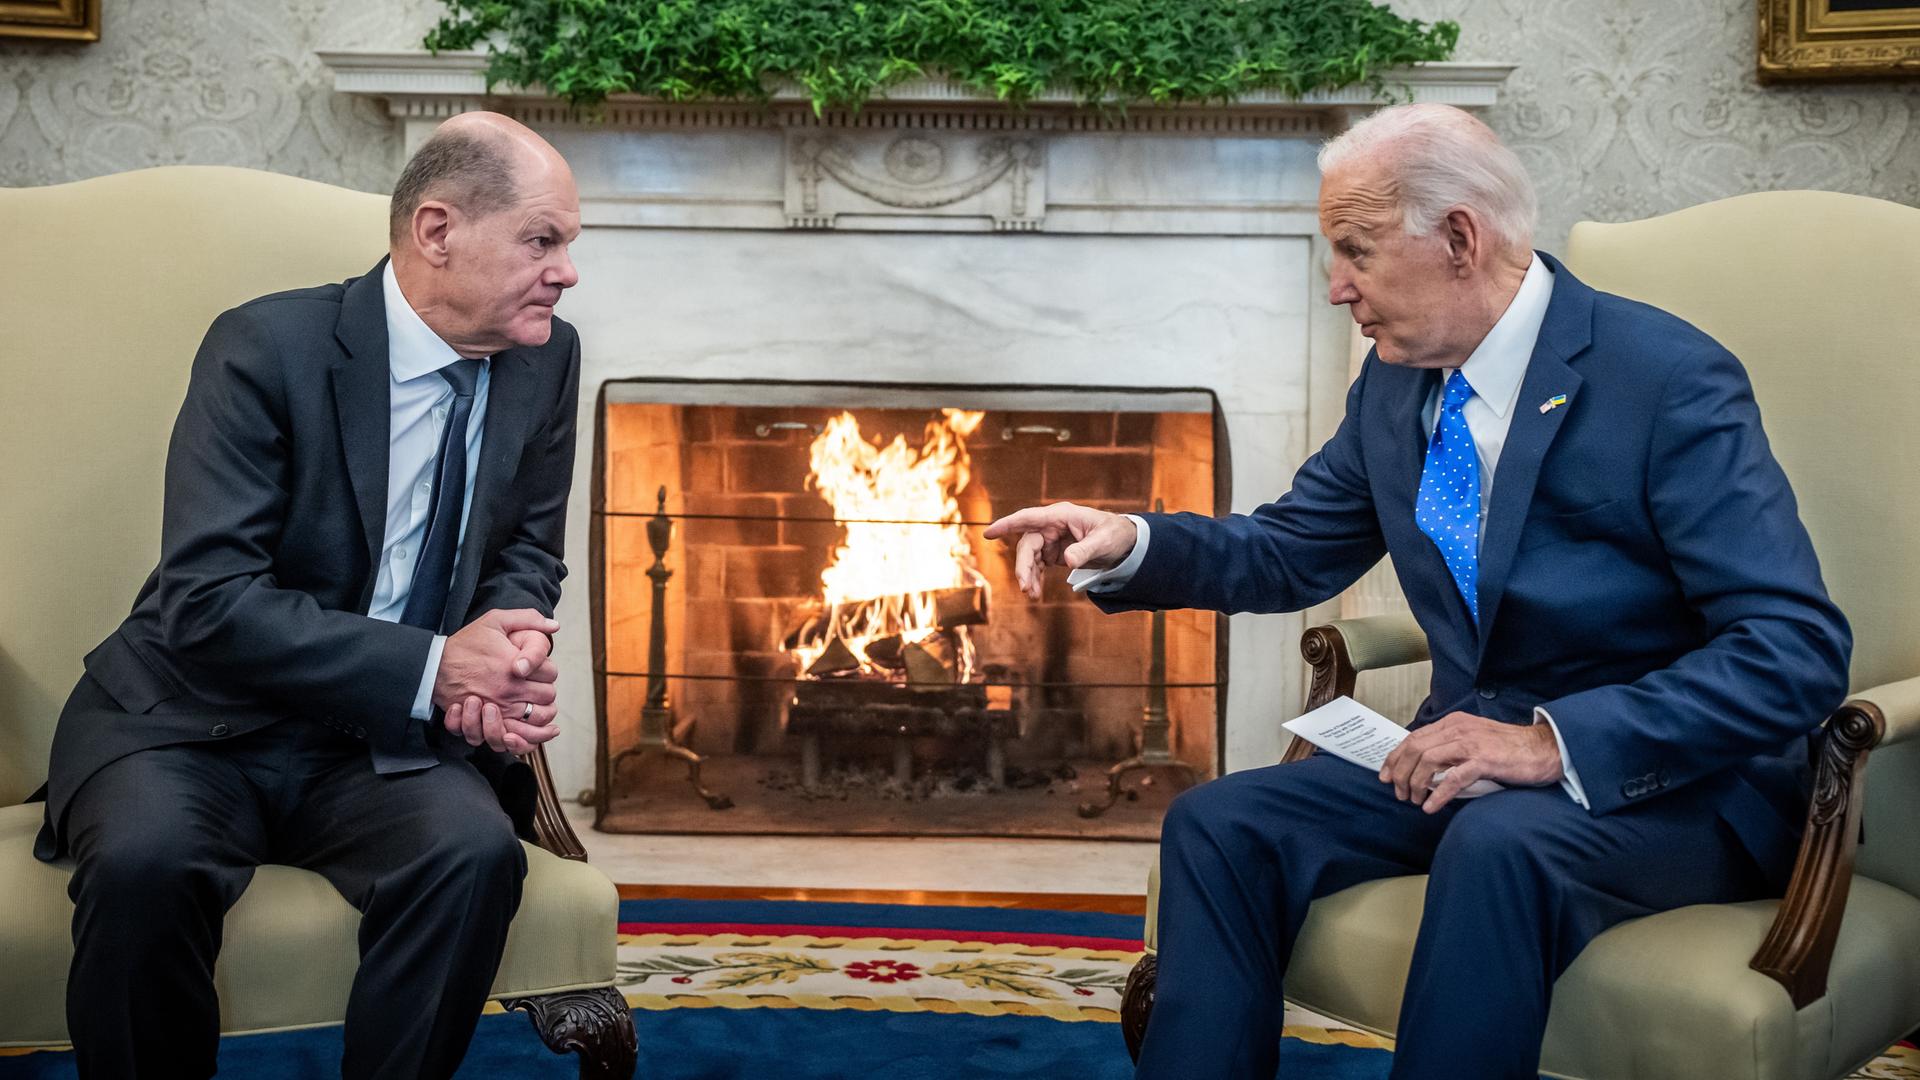 Bundeskanzler Scholz und US-Präsident Biden sitzen sich in Sesseln gegenüber und unterhalten sich. Biden gestikuliert mit der rechten Hand. Im Hintergrund lodert ein Kaminfeuer.